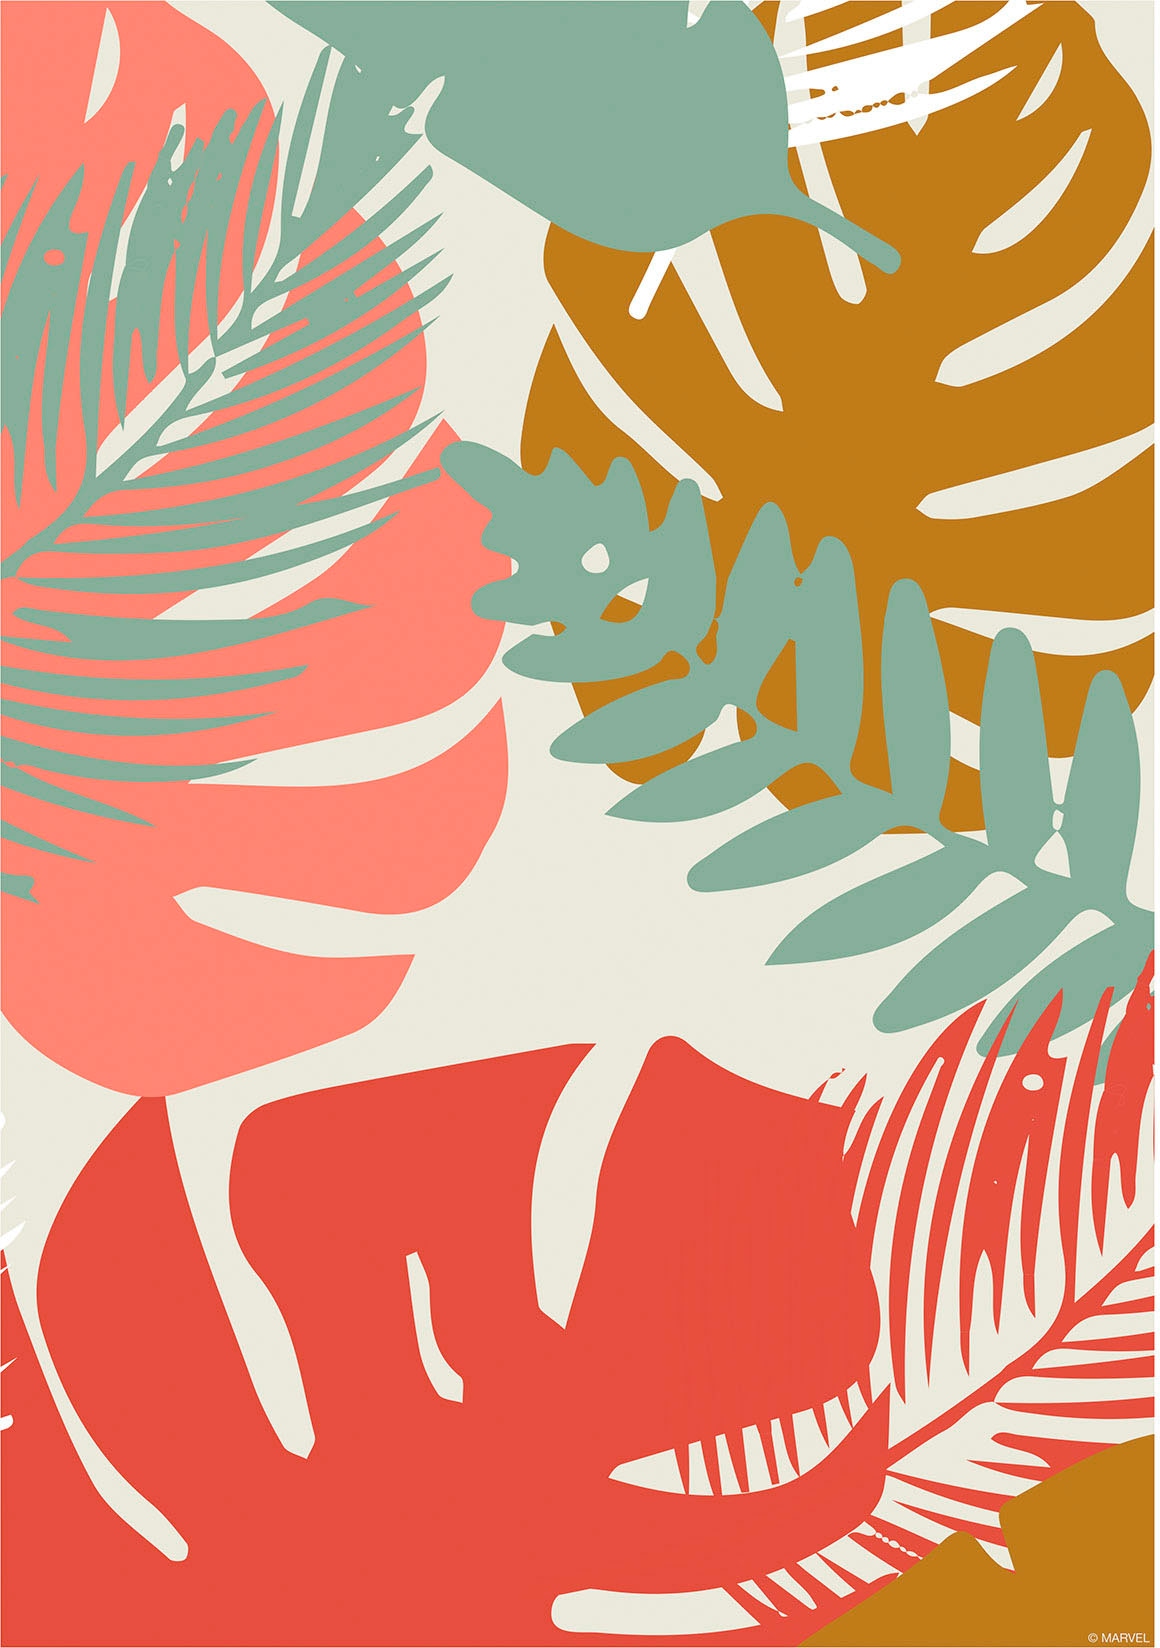 Komar Wandbild »Winter Tropics Black Panther Plants«, (1 St.), Deutsches Premium-Poster Fotopapier mit seidenmatter Oberfläche und hoher Lichtbeständigkeit. Für fotorealistische Drucke mit gestochen scharfen Details und hervorragender Farbbrillanz.